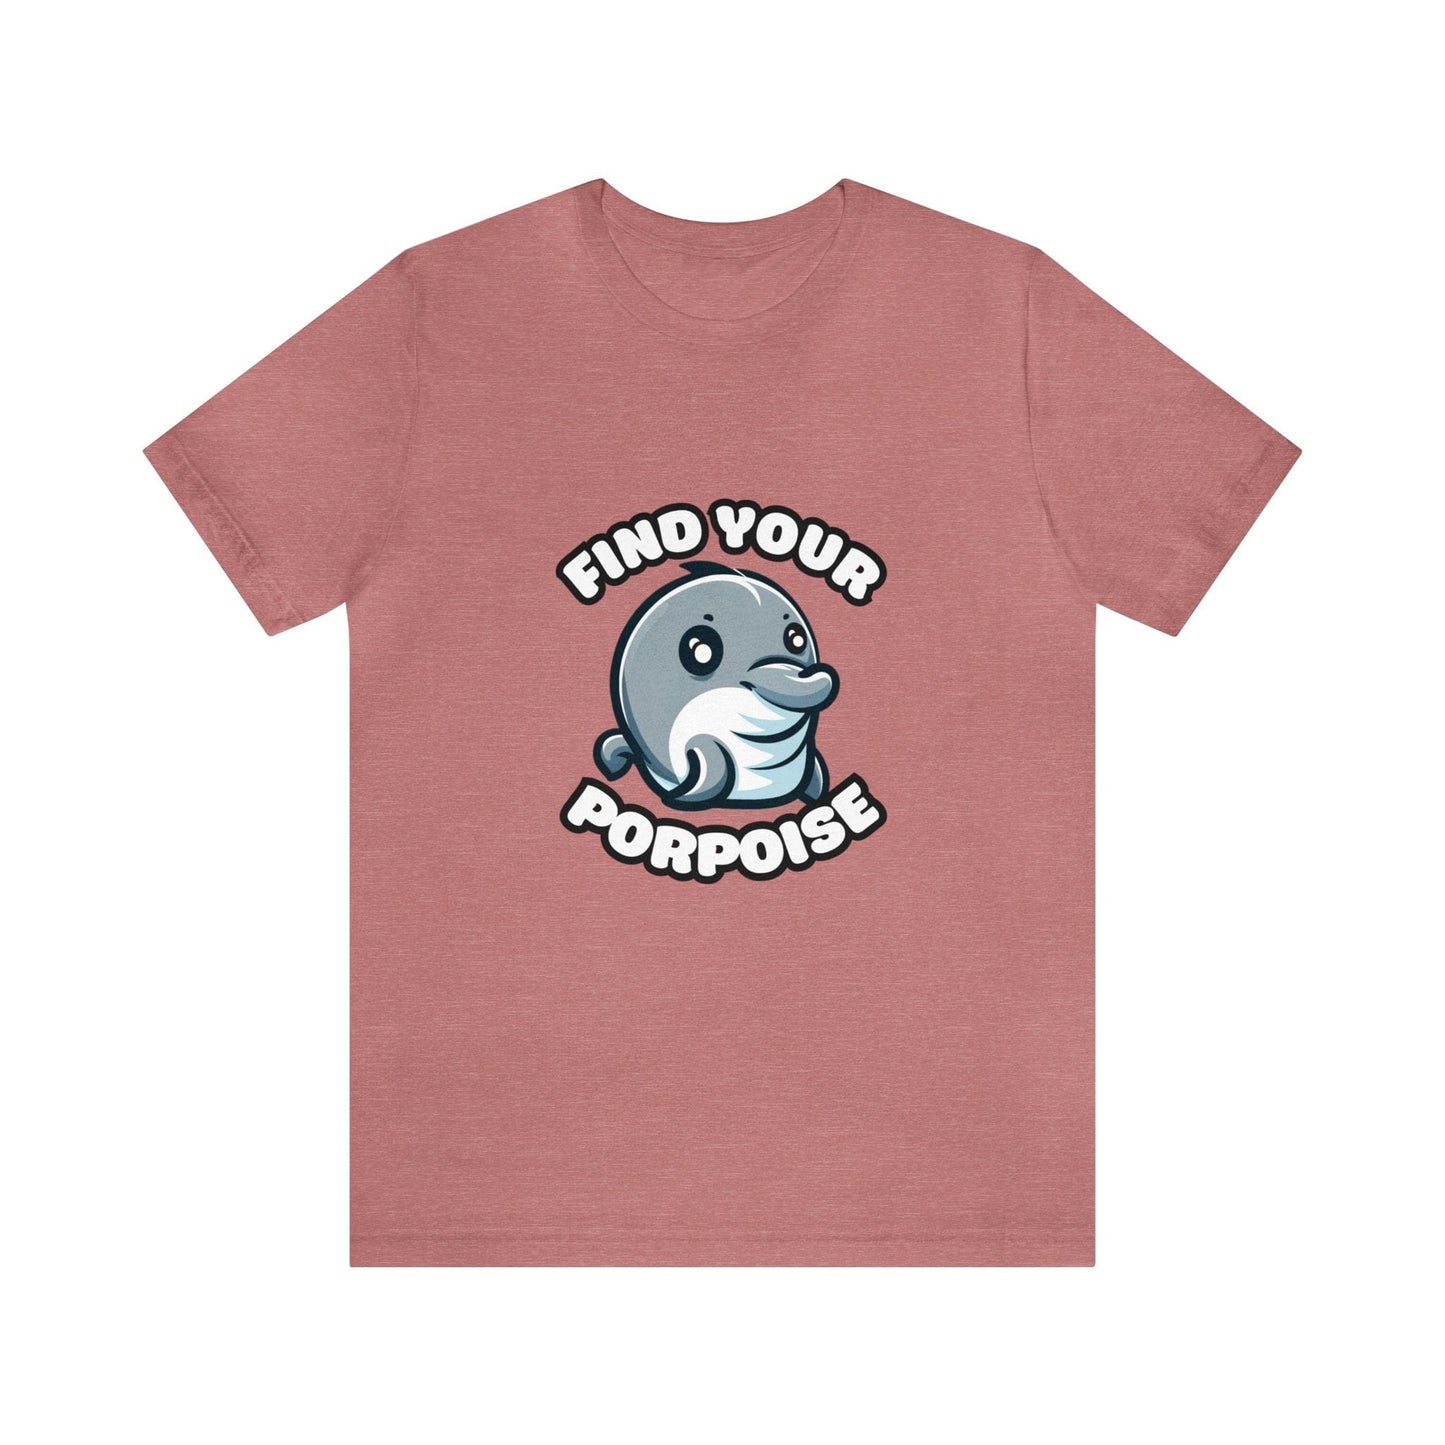 US - Find Your Porpoise - Porpoise T-shirt Heather Mauve / S